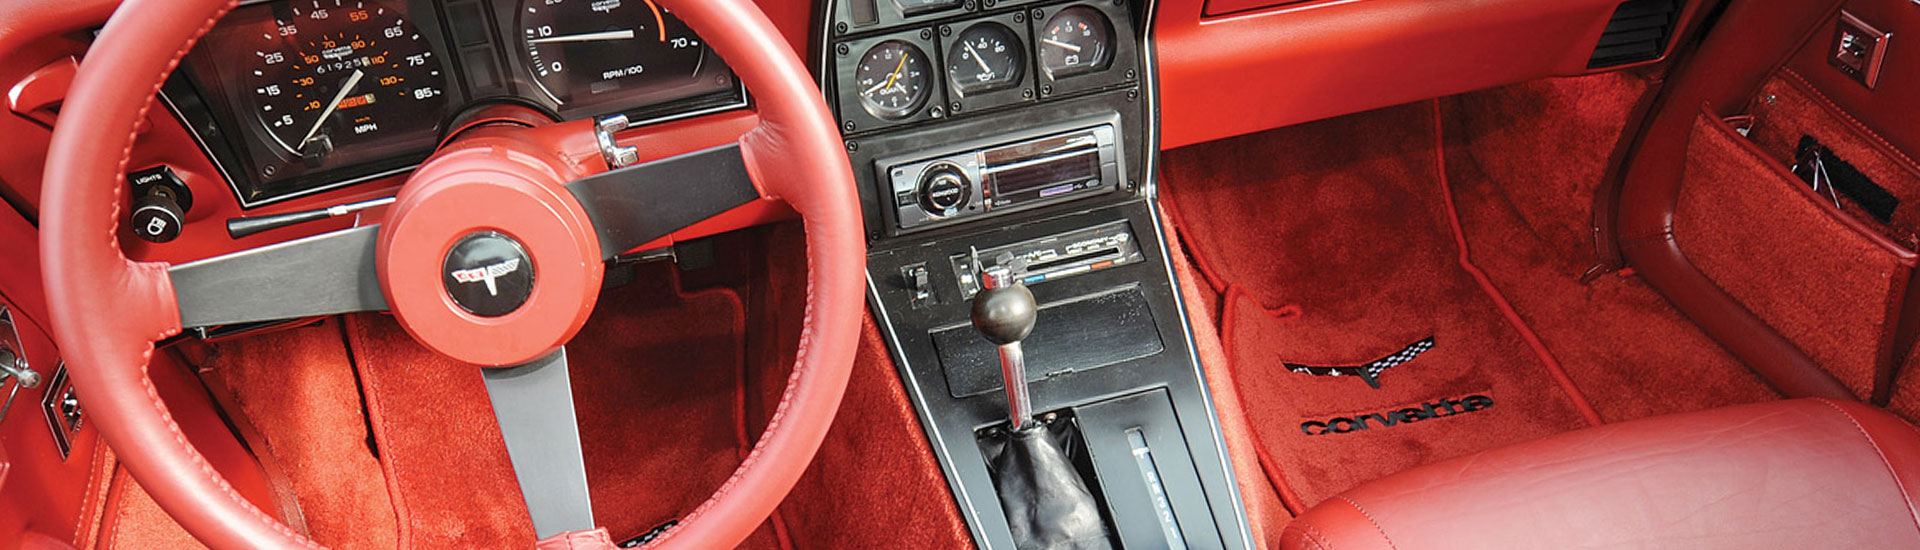 1981 Chevrolet Corvette Dash Kits